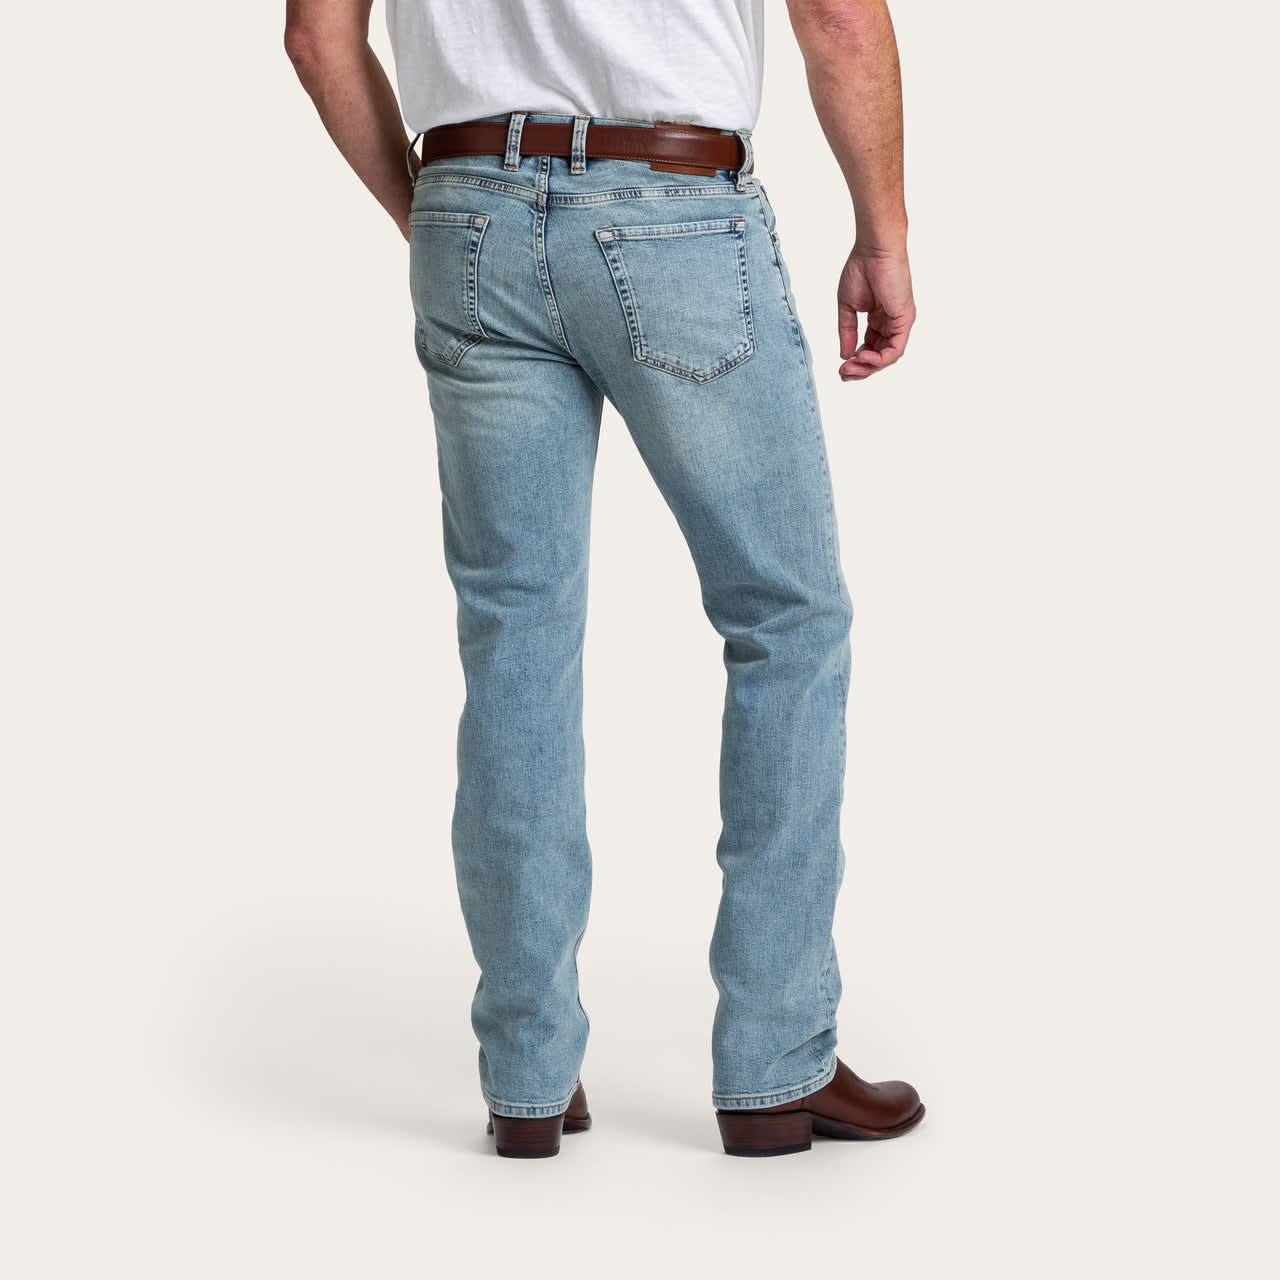 Slim Fit Jeans - Premium Denim Men